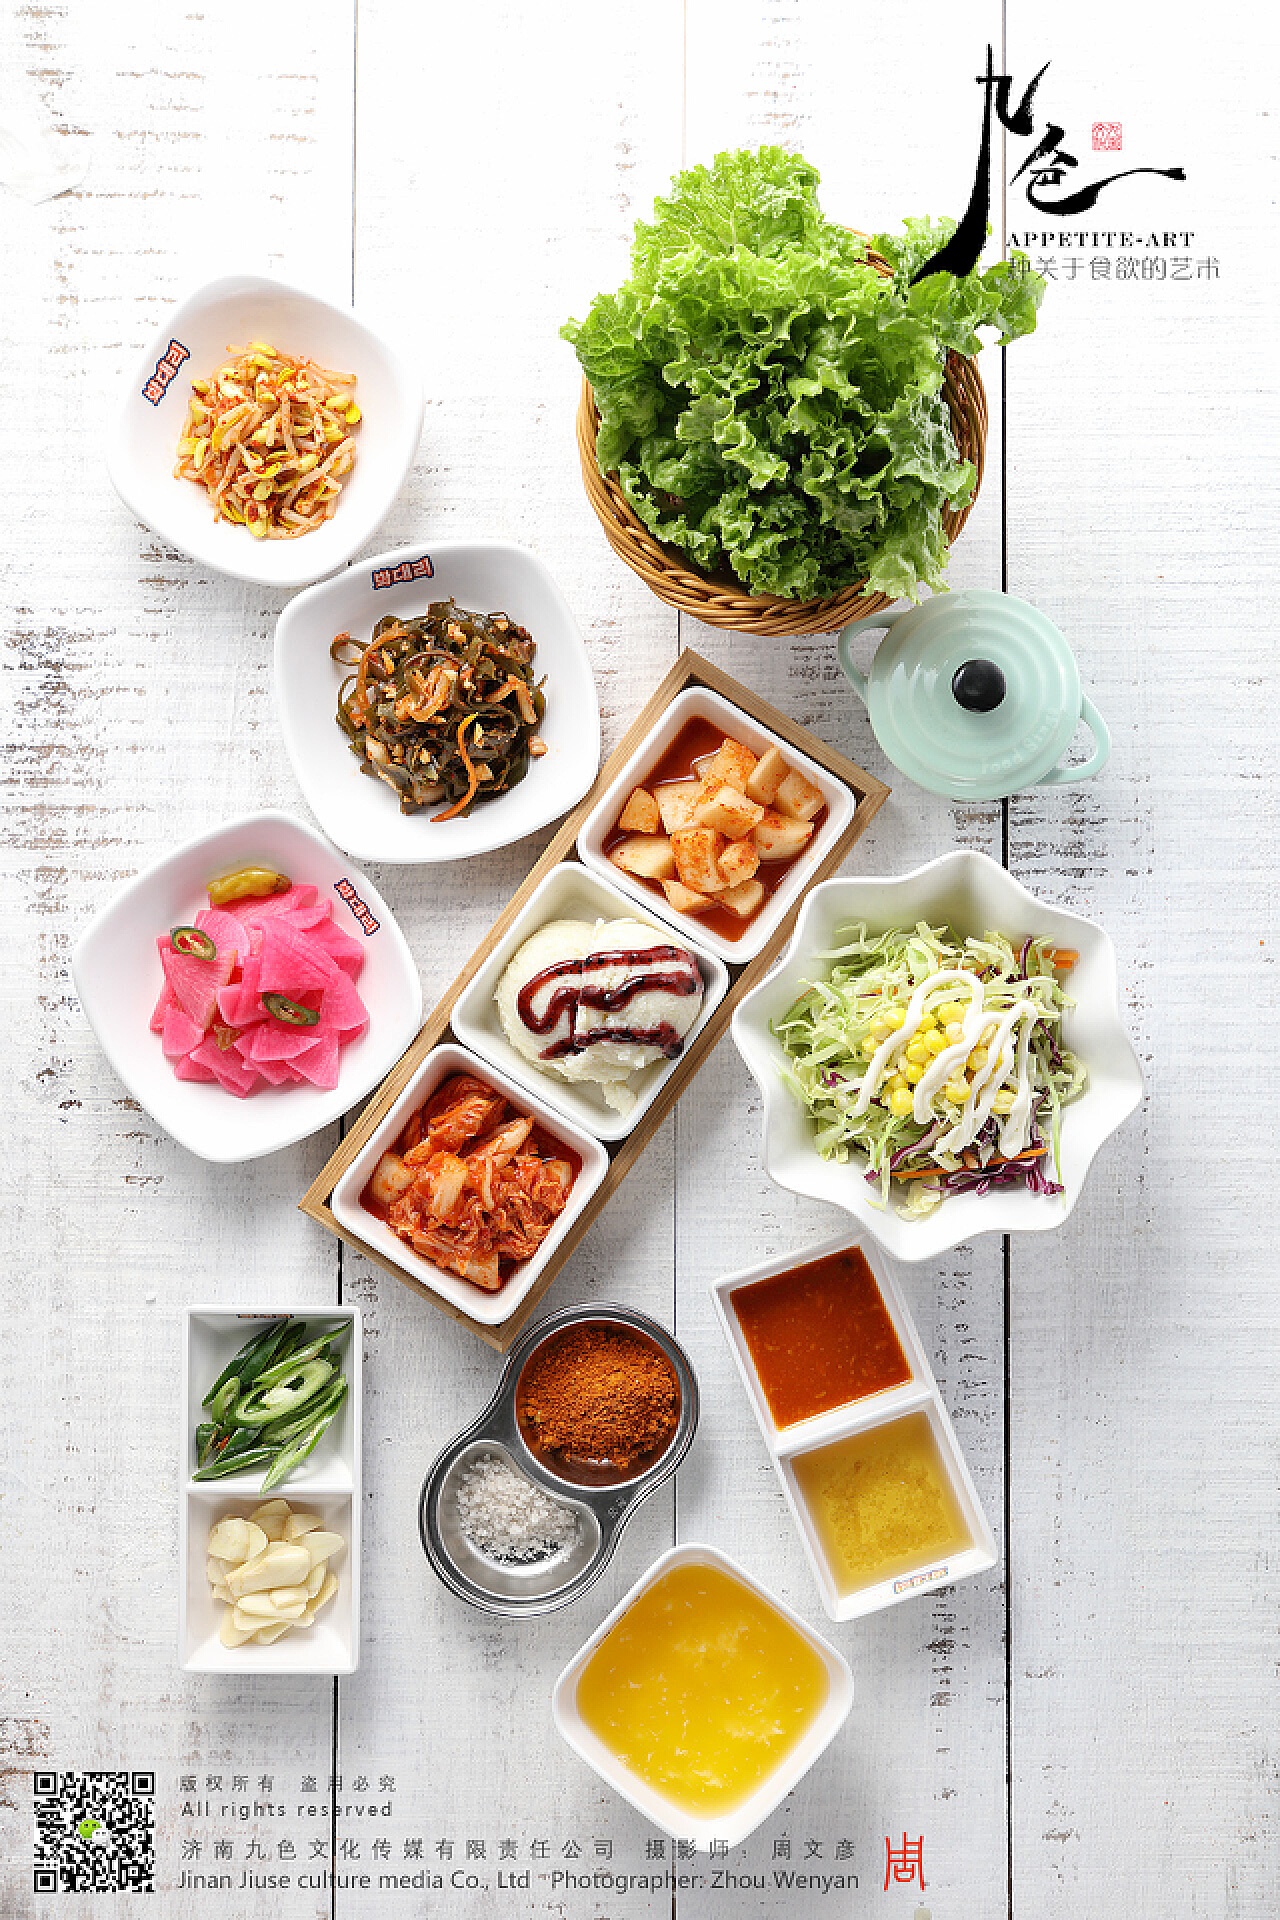 韩国泡菜自己做—白菜泡菜_白菜泡菜_浓咖啡淡心情的日志_美食天下